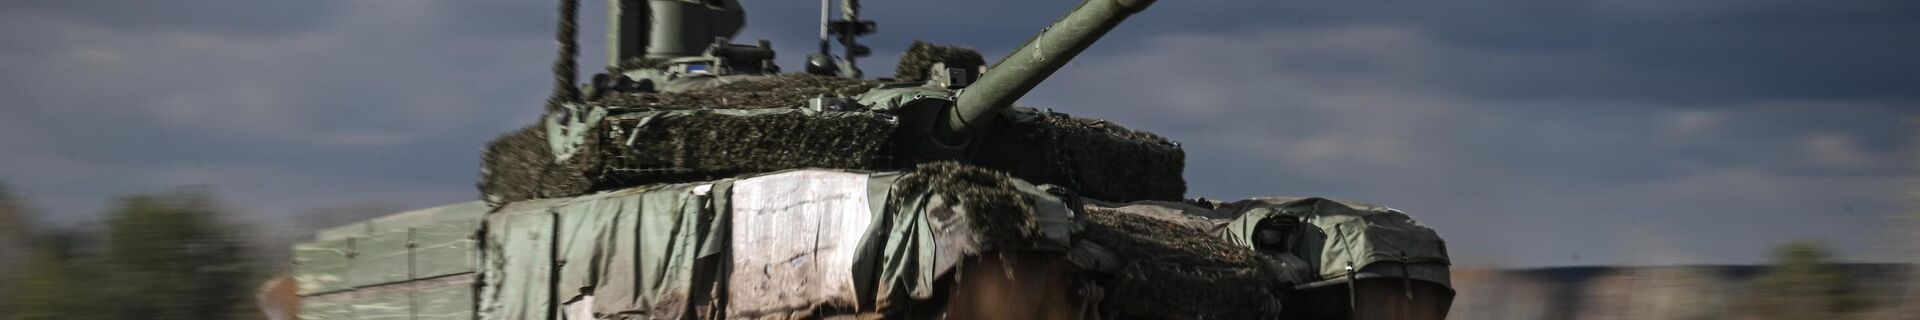 Боевое слаживание экипажей танков Т-90М Прорыв в зоне СВО - Sputnik Беларусь